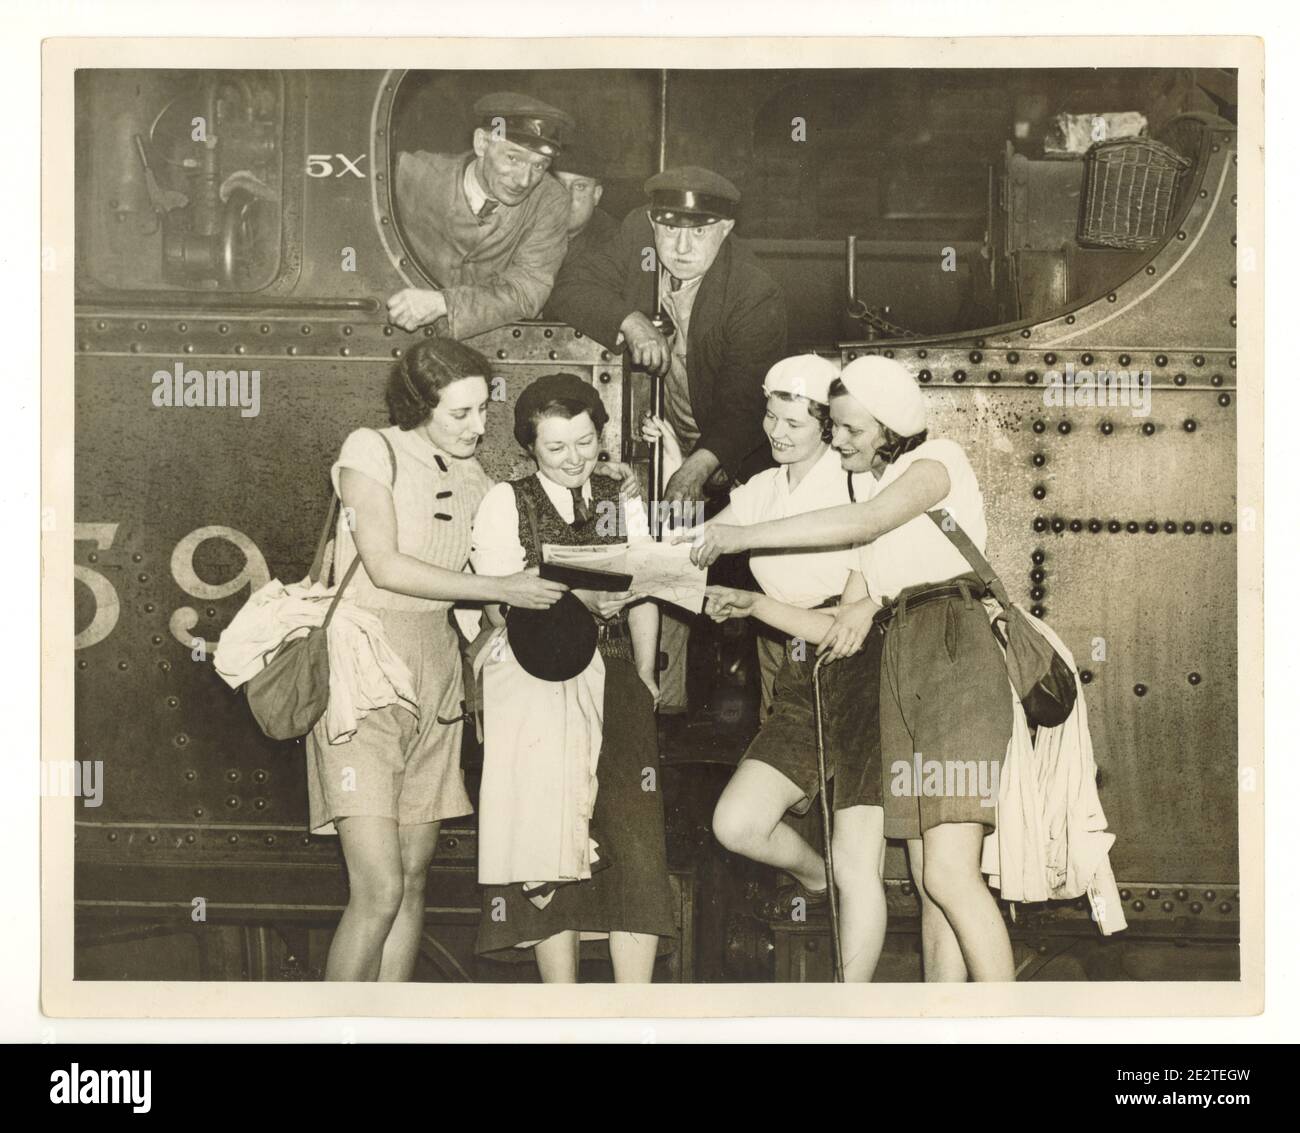 WW2 era stampa foto di felici giovani camminatori leggere una mappa alla stazione ferroviaria piattaforma, accanto a un motore a vapore, i macchinisti guardare su, Londra, Regno Unito, anni '40 Foto Stock